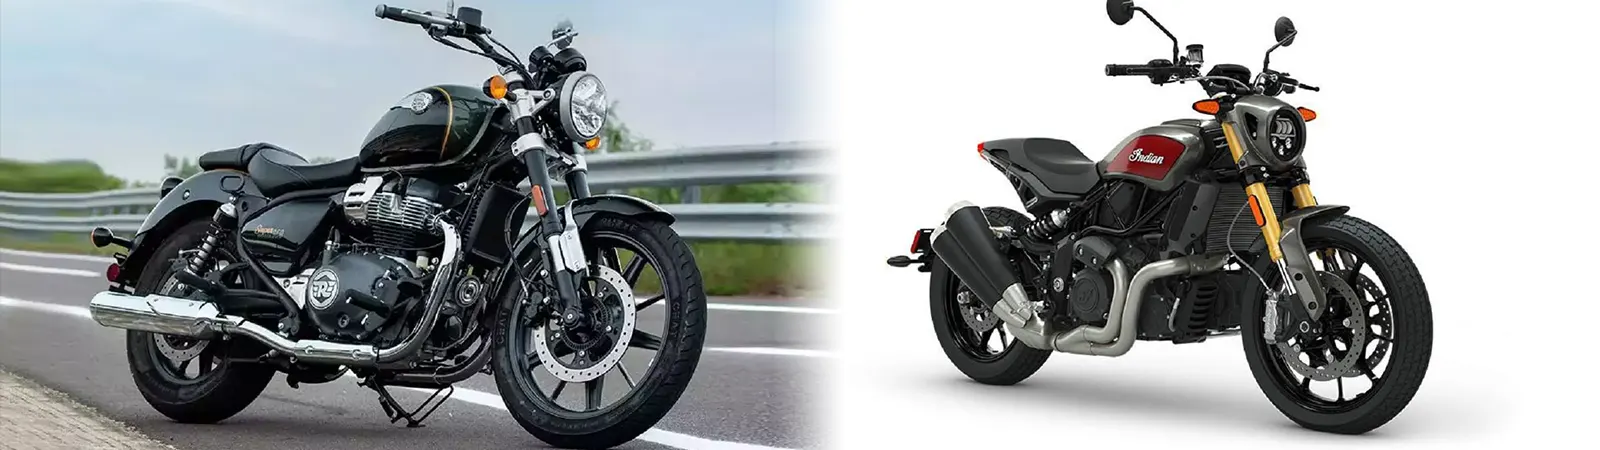 इतने कम Price में भारत में Launch हुईं यह 2 Brand New Motorcycles!!! Price और Features जानकर हो जाएँगे हैरान